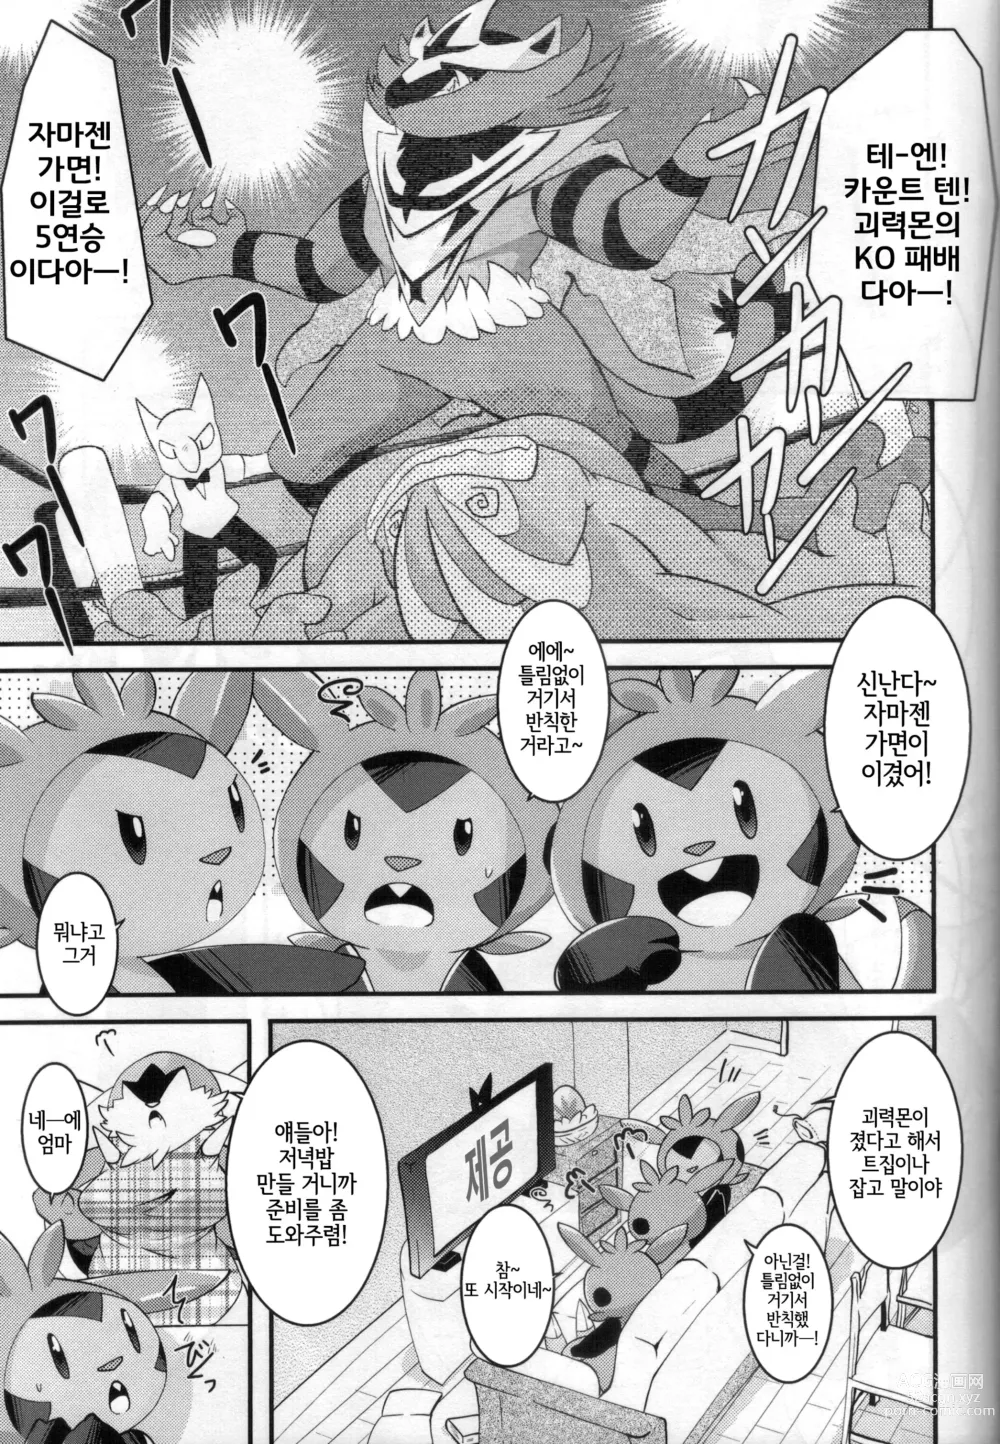 Page 4 of doujinshi 아빠도 엄마한테 어리광 부리고 싶어!